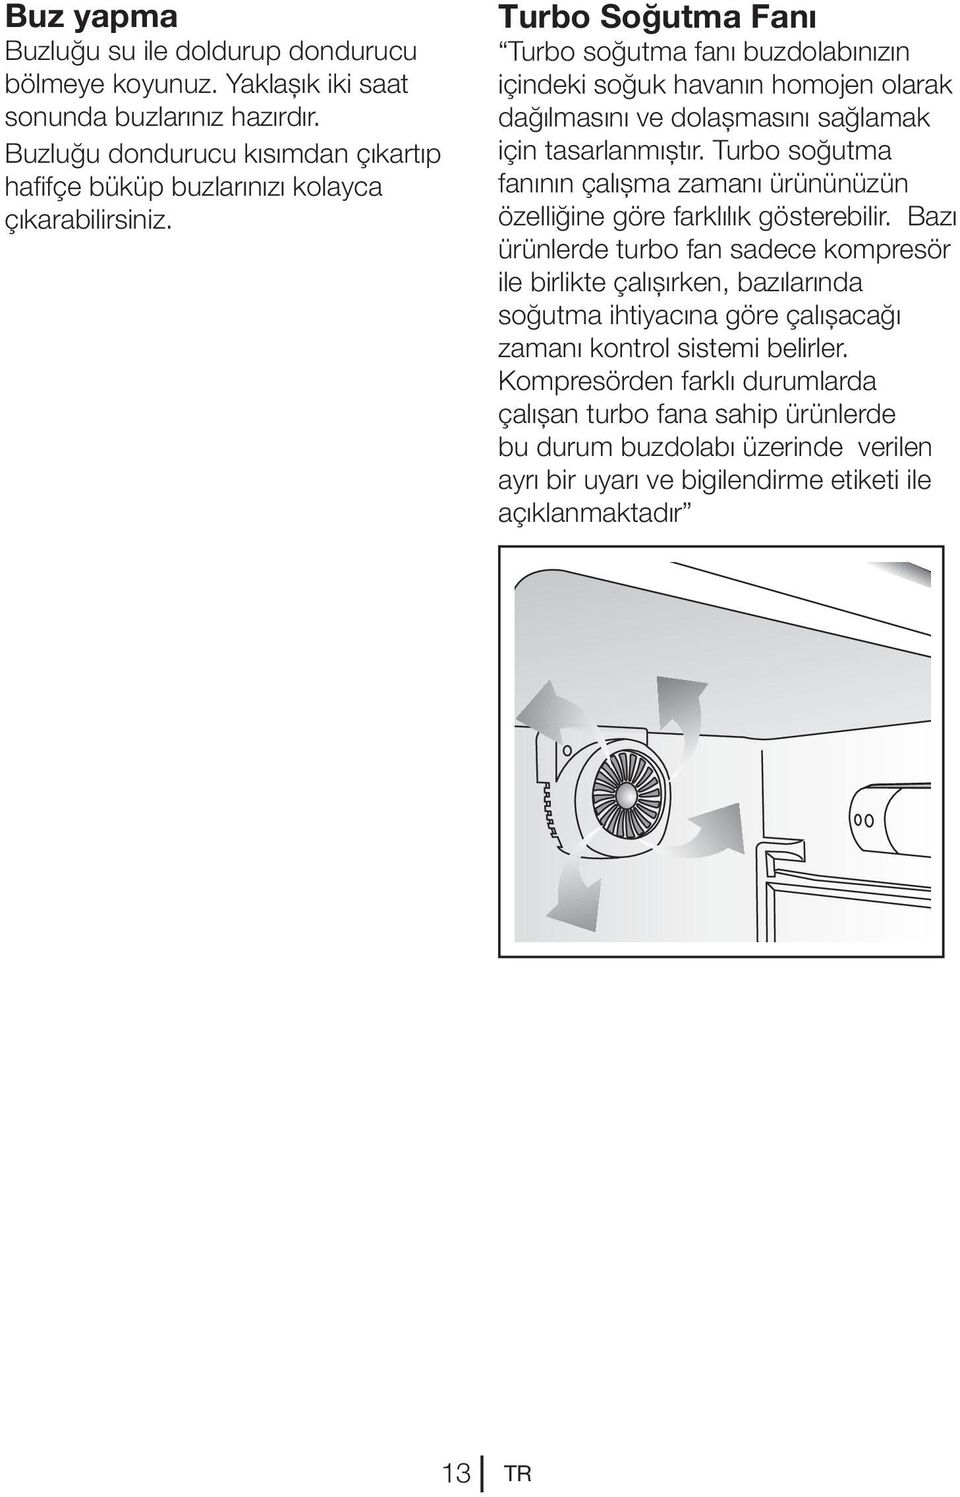 Turbo Soğutma Fanı Turbo soğutma fanı buzdolabınızın içindeki soğuk havanın homojen olarak dağılmasını ve dolaşmasını sağlamak için tasarlanmıştır.